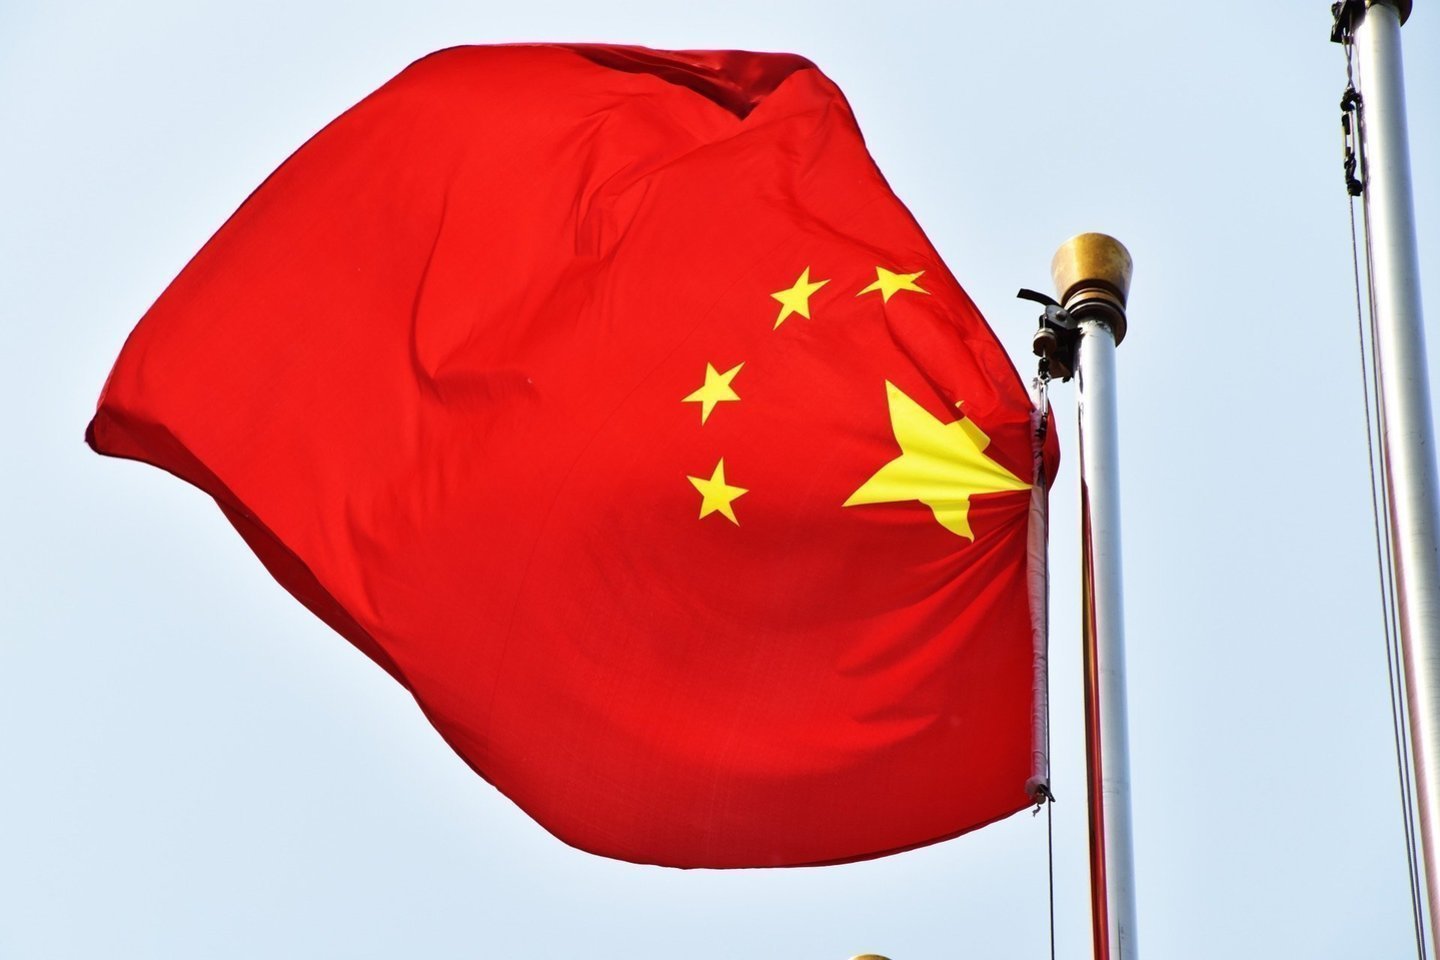  Kinija svarsto įvesti ekonomines sankcijas Lietuvai, teigia Pekino propagandinis leidinys.<br>Pixbay.com nuotr.